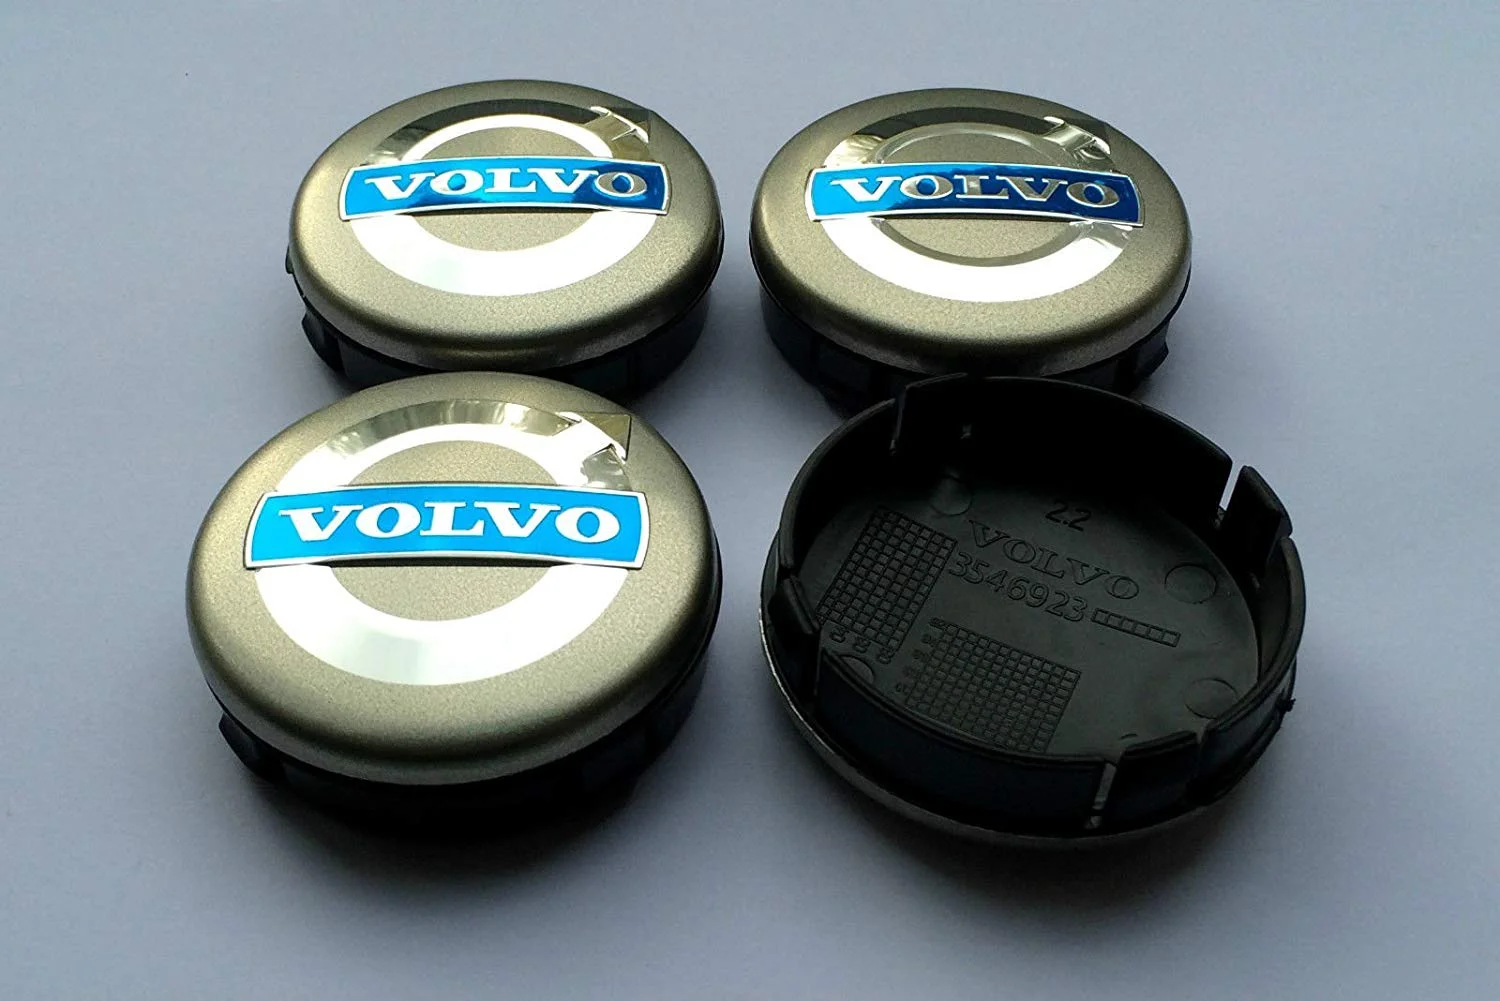 4 tapabujes en gris con el logo de Volvo de 64 mm